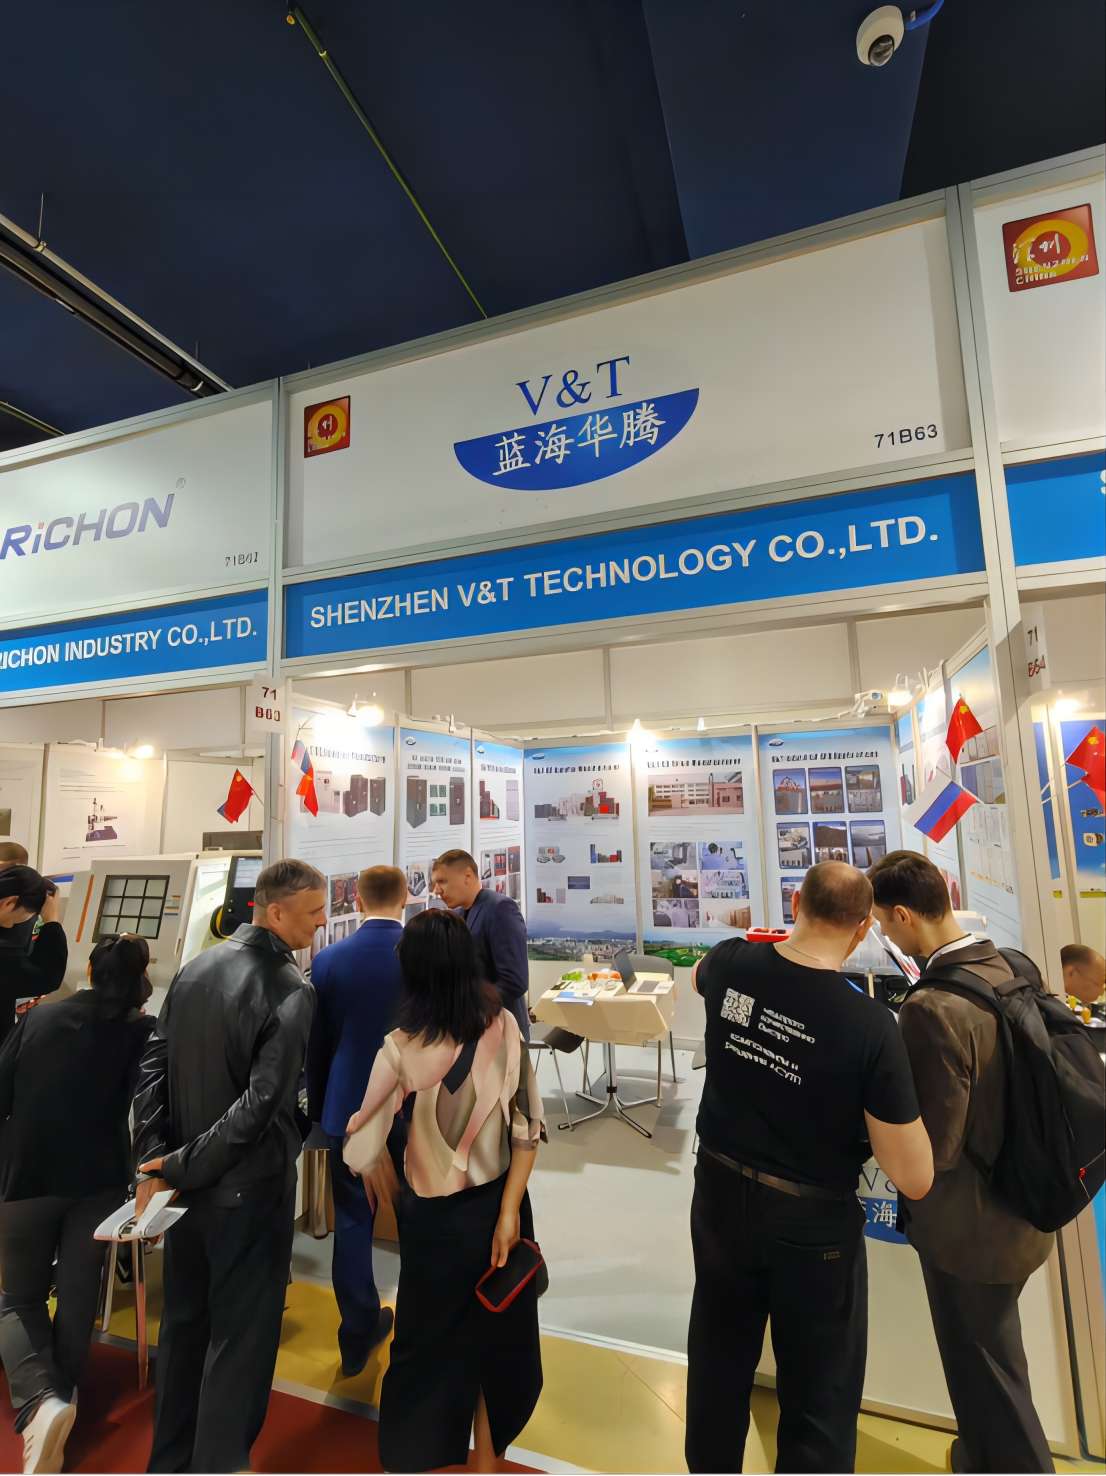 تعرض شركة V&T أحدث الحلول في معرض Metalloobrabotka في موسكو